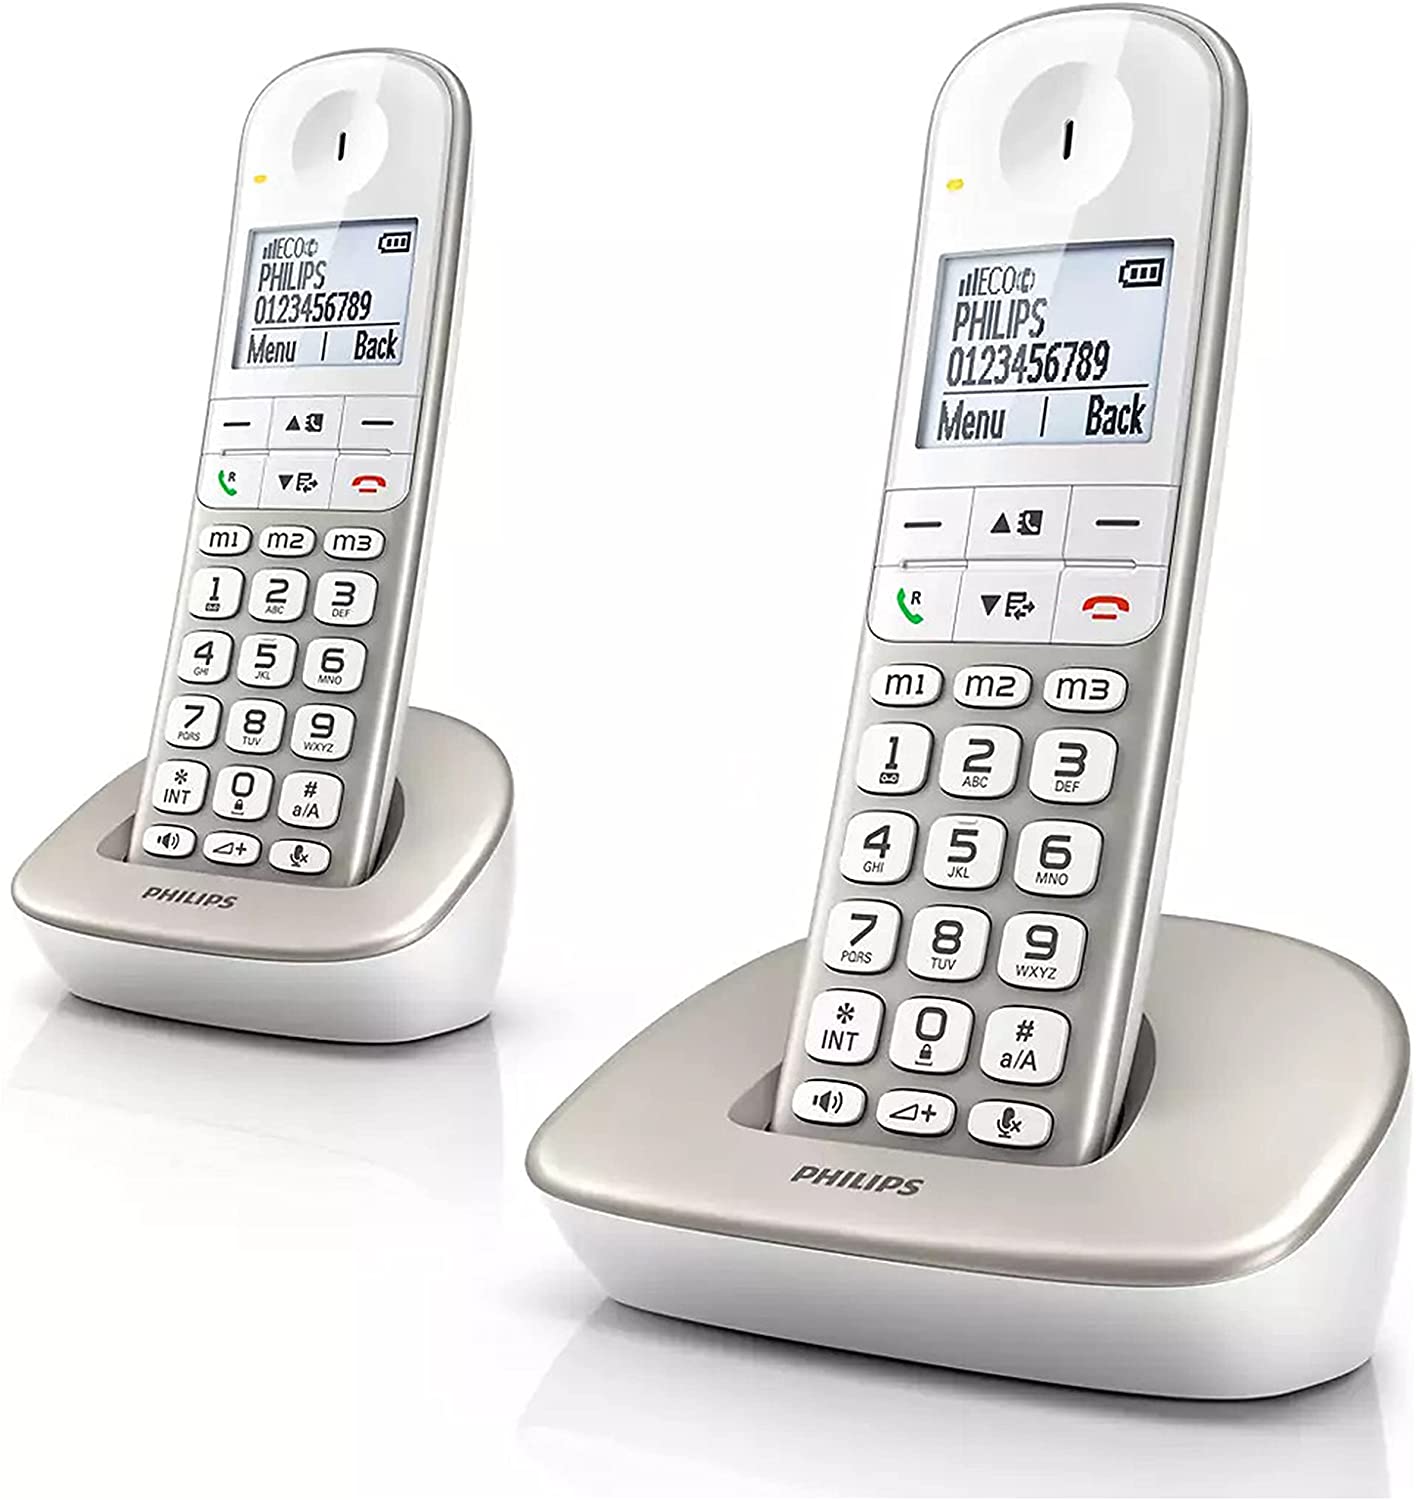 Los 9 mejores teléfonos inalámbricos para tu hogar